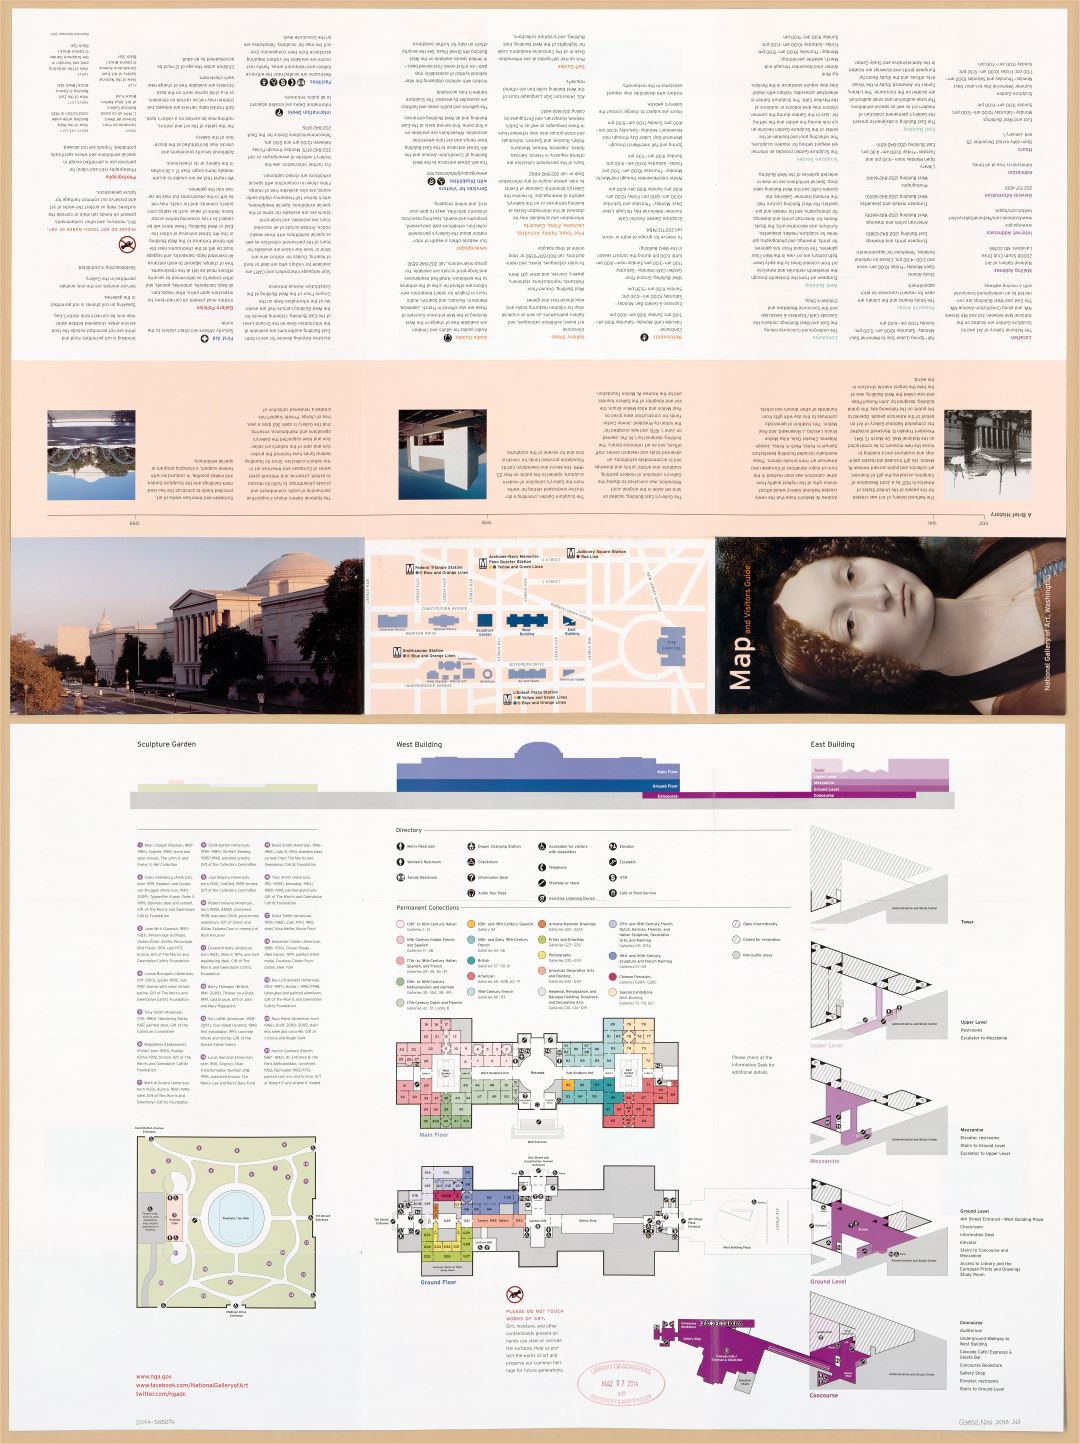 Крупномасштабная детальная карта и руководство для посетителей Национальной галереи искусств, Вашингтон, округ Колумбия - 2013